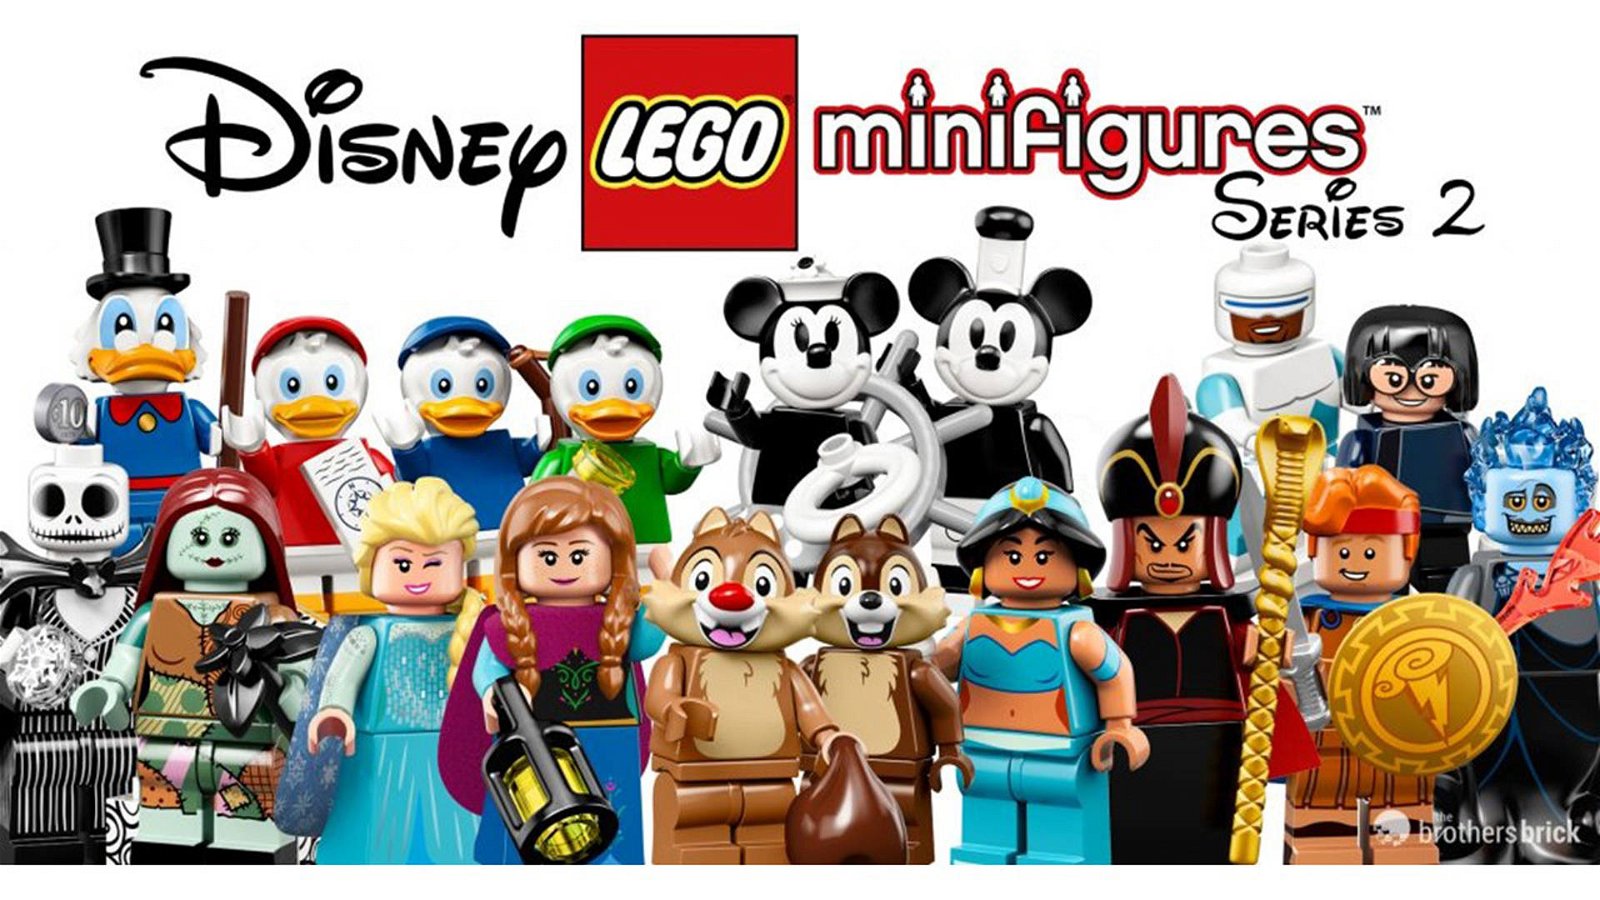 Immagine di LEGO Collectible, rivelata la distribuzione delle figure della seconda serie Disney!